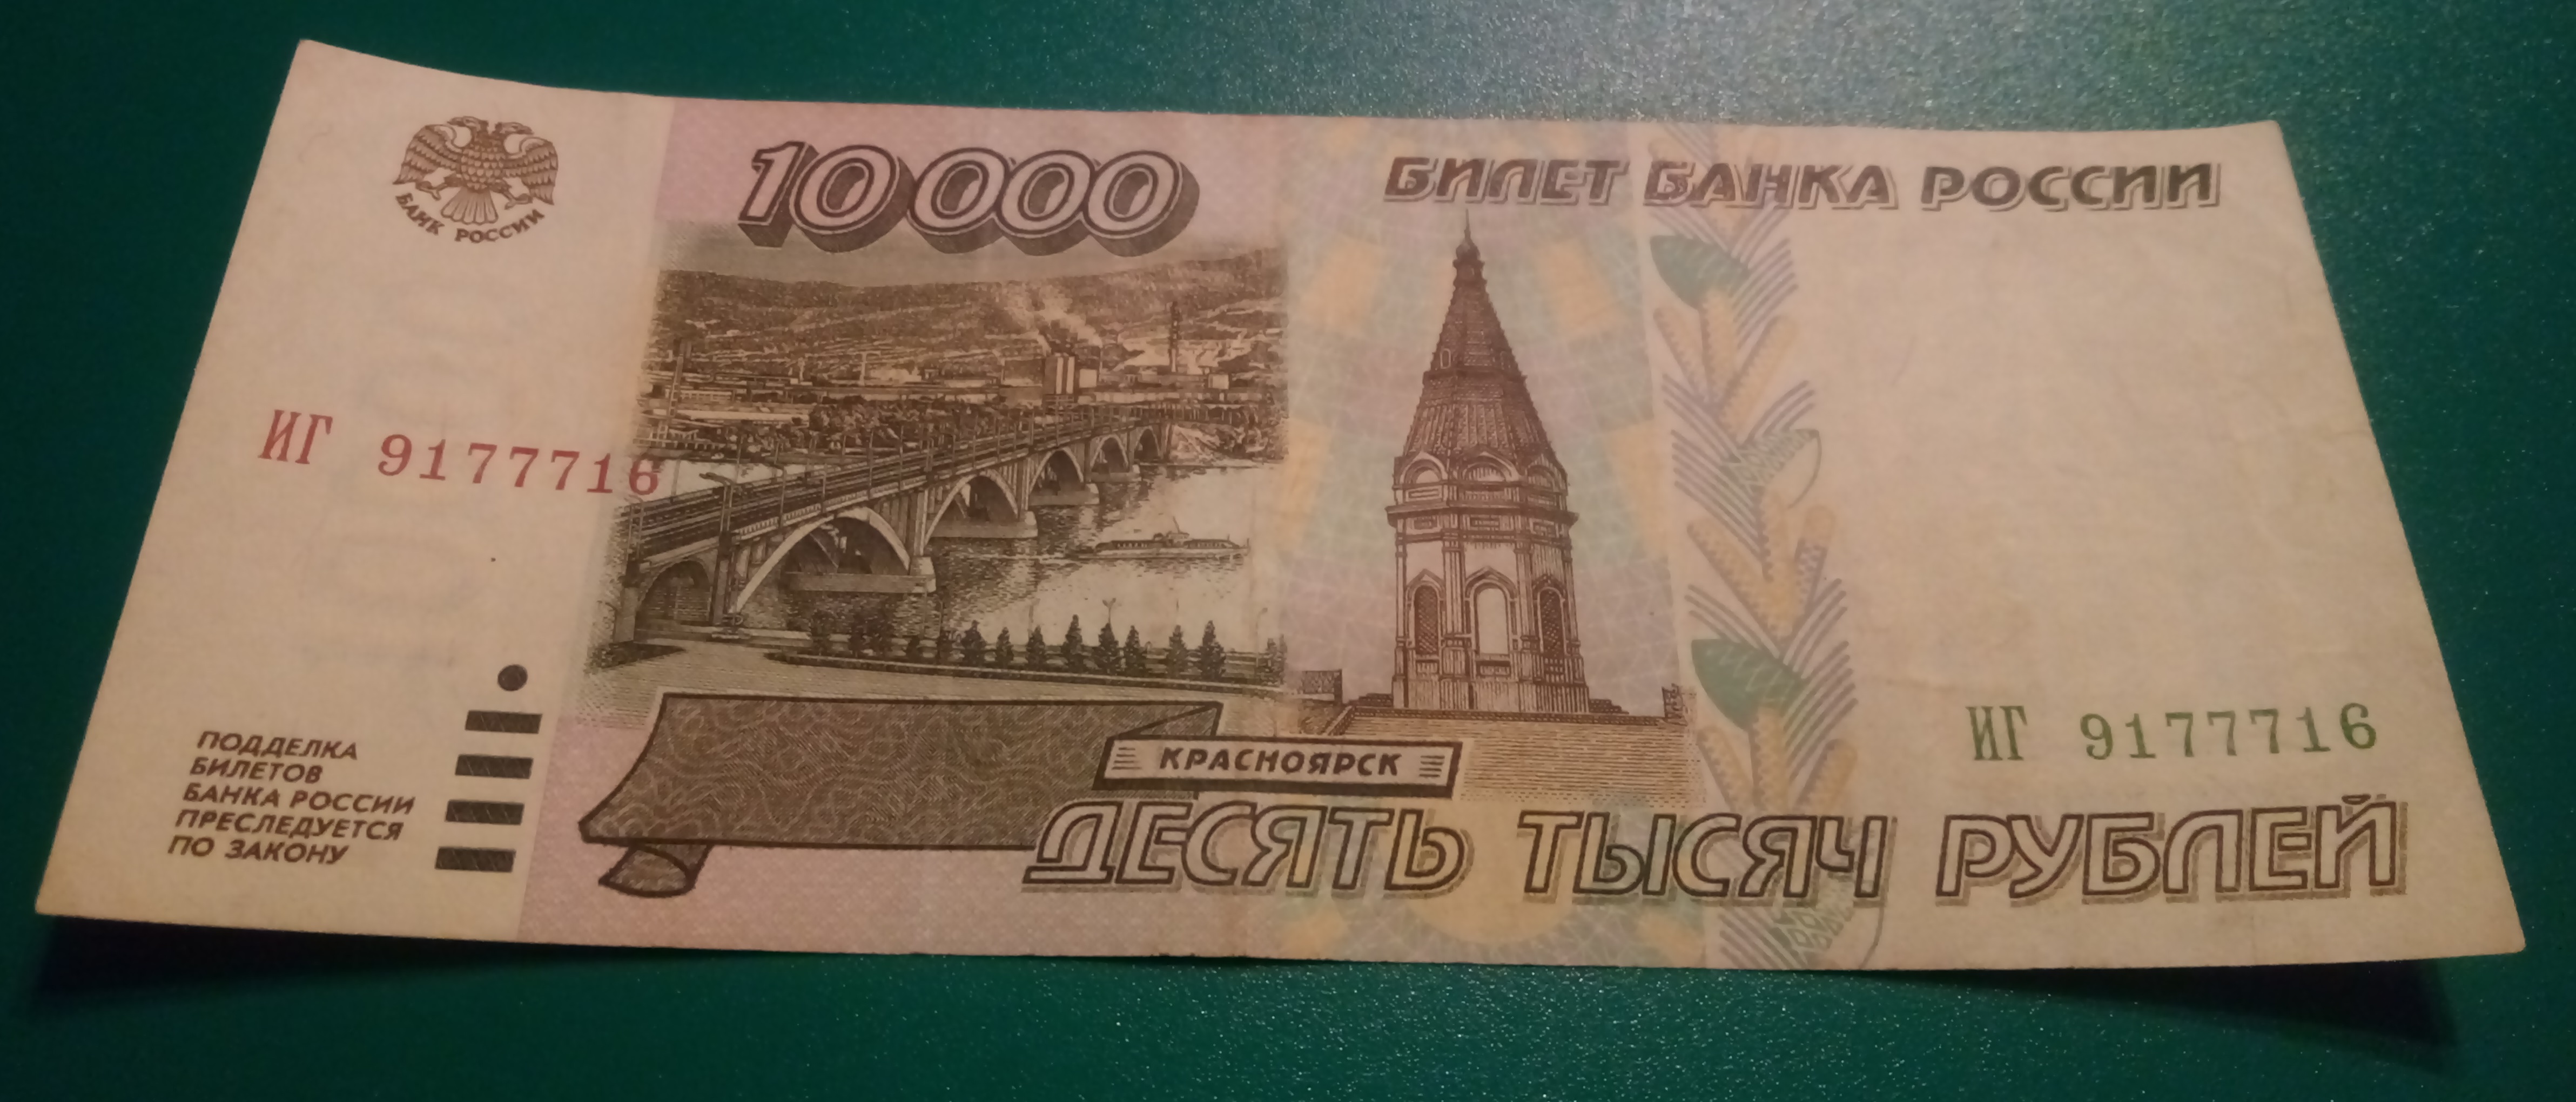 6000 рублей одной купюрой фото